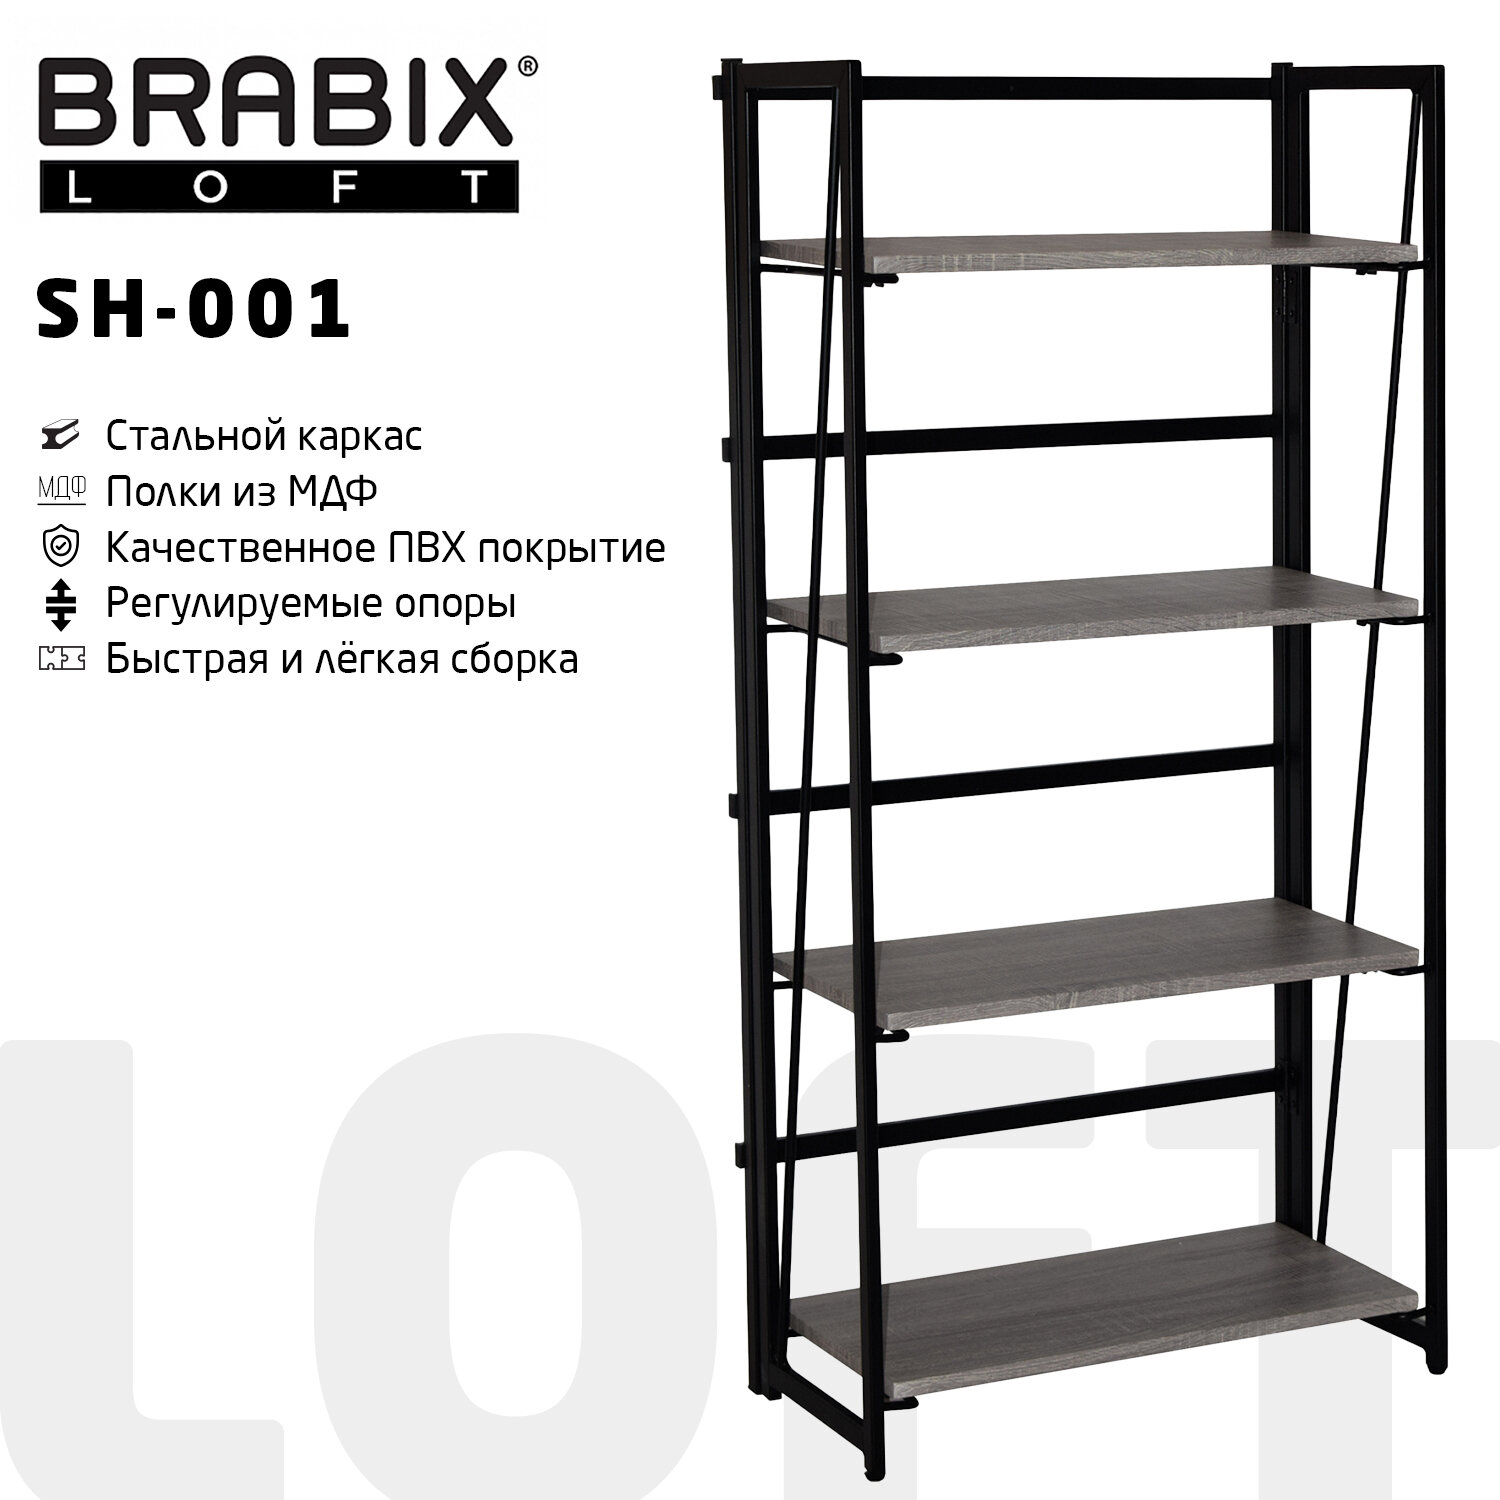    BRABIX LOFT SH-001, 6003001250 , ,   , 641229